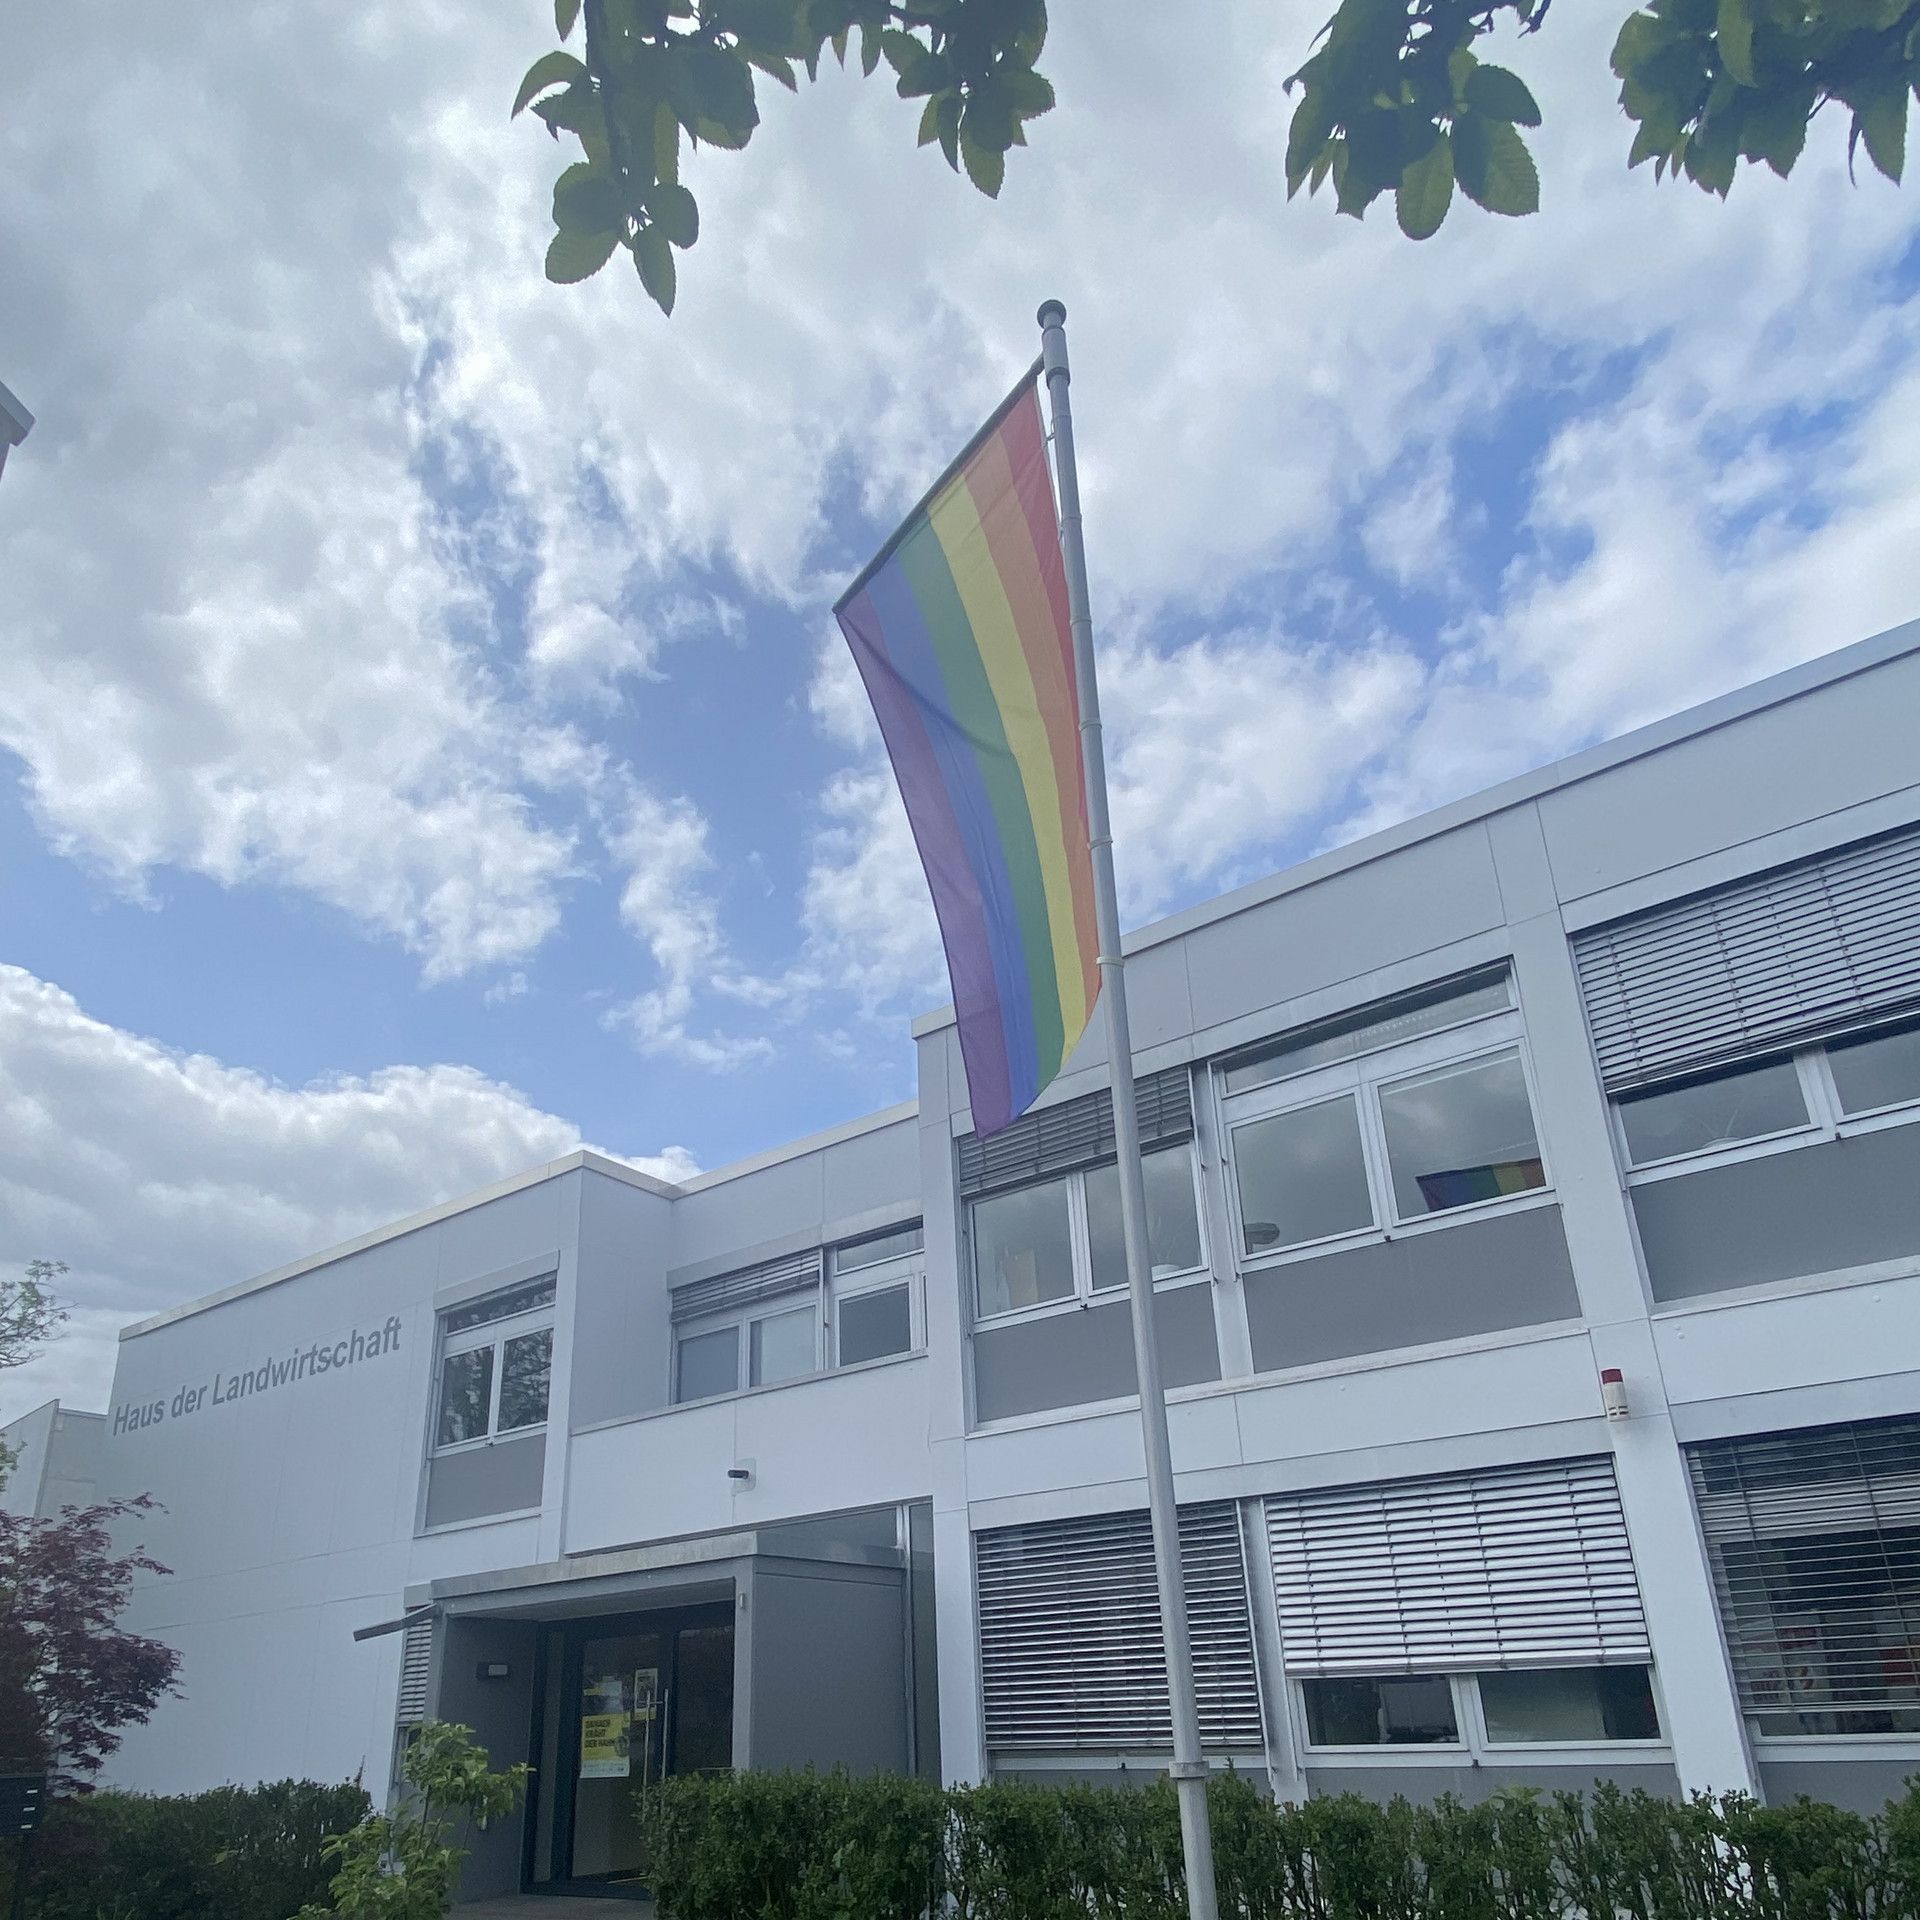 Regenbogenflagge an Mast rechts im Bild vor dem Gebäuse der Hauses der Landwirtschaft